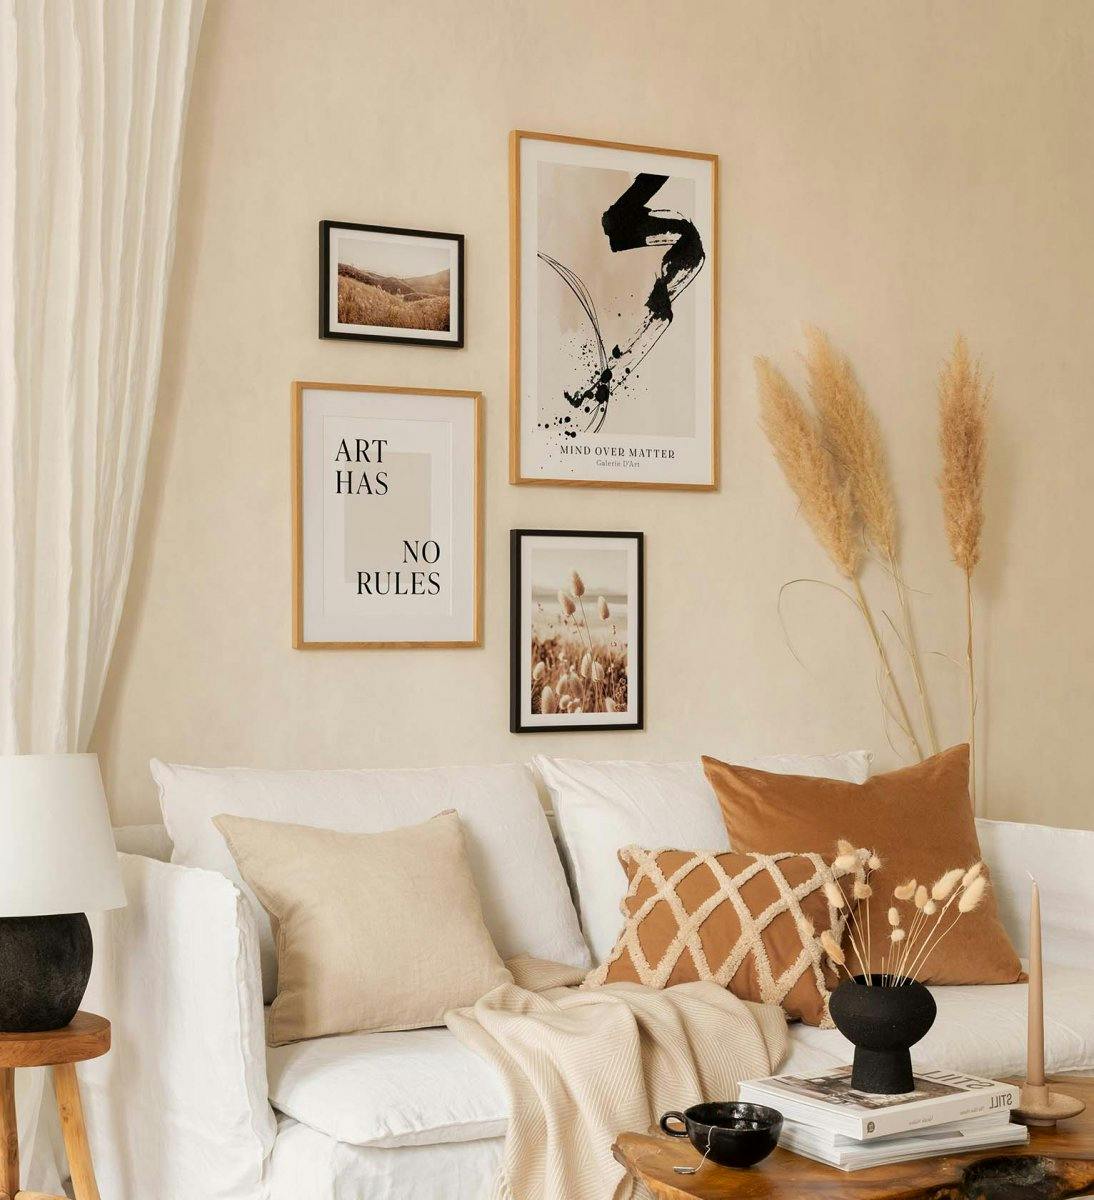 En moderne bildevegg av fotografier og tekstplakater kombinert med fredelige farger til stuen